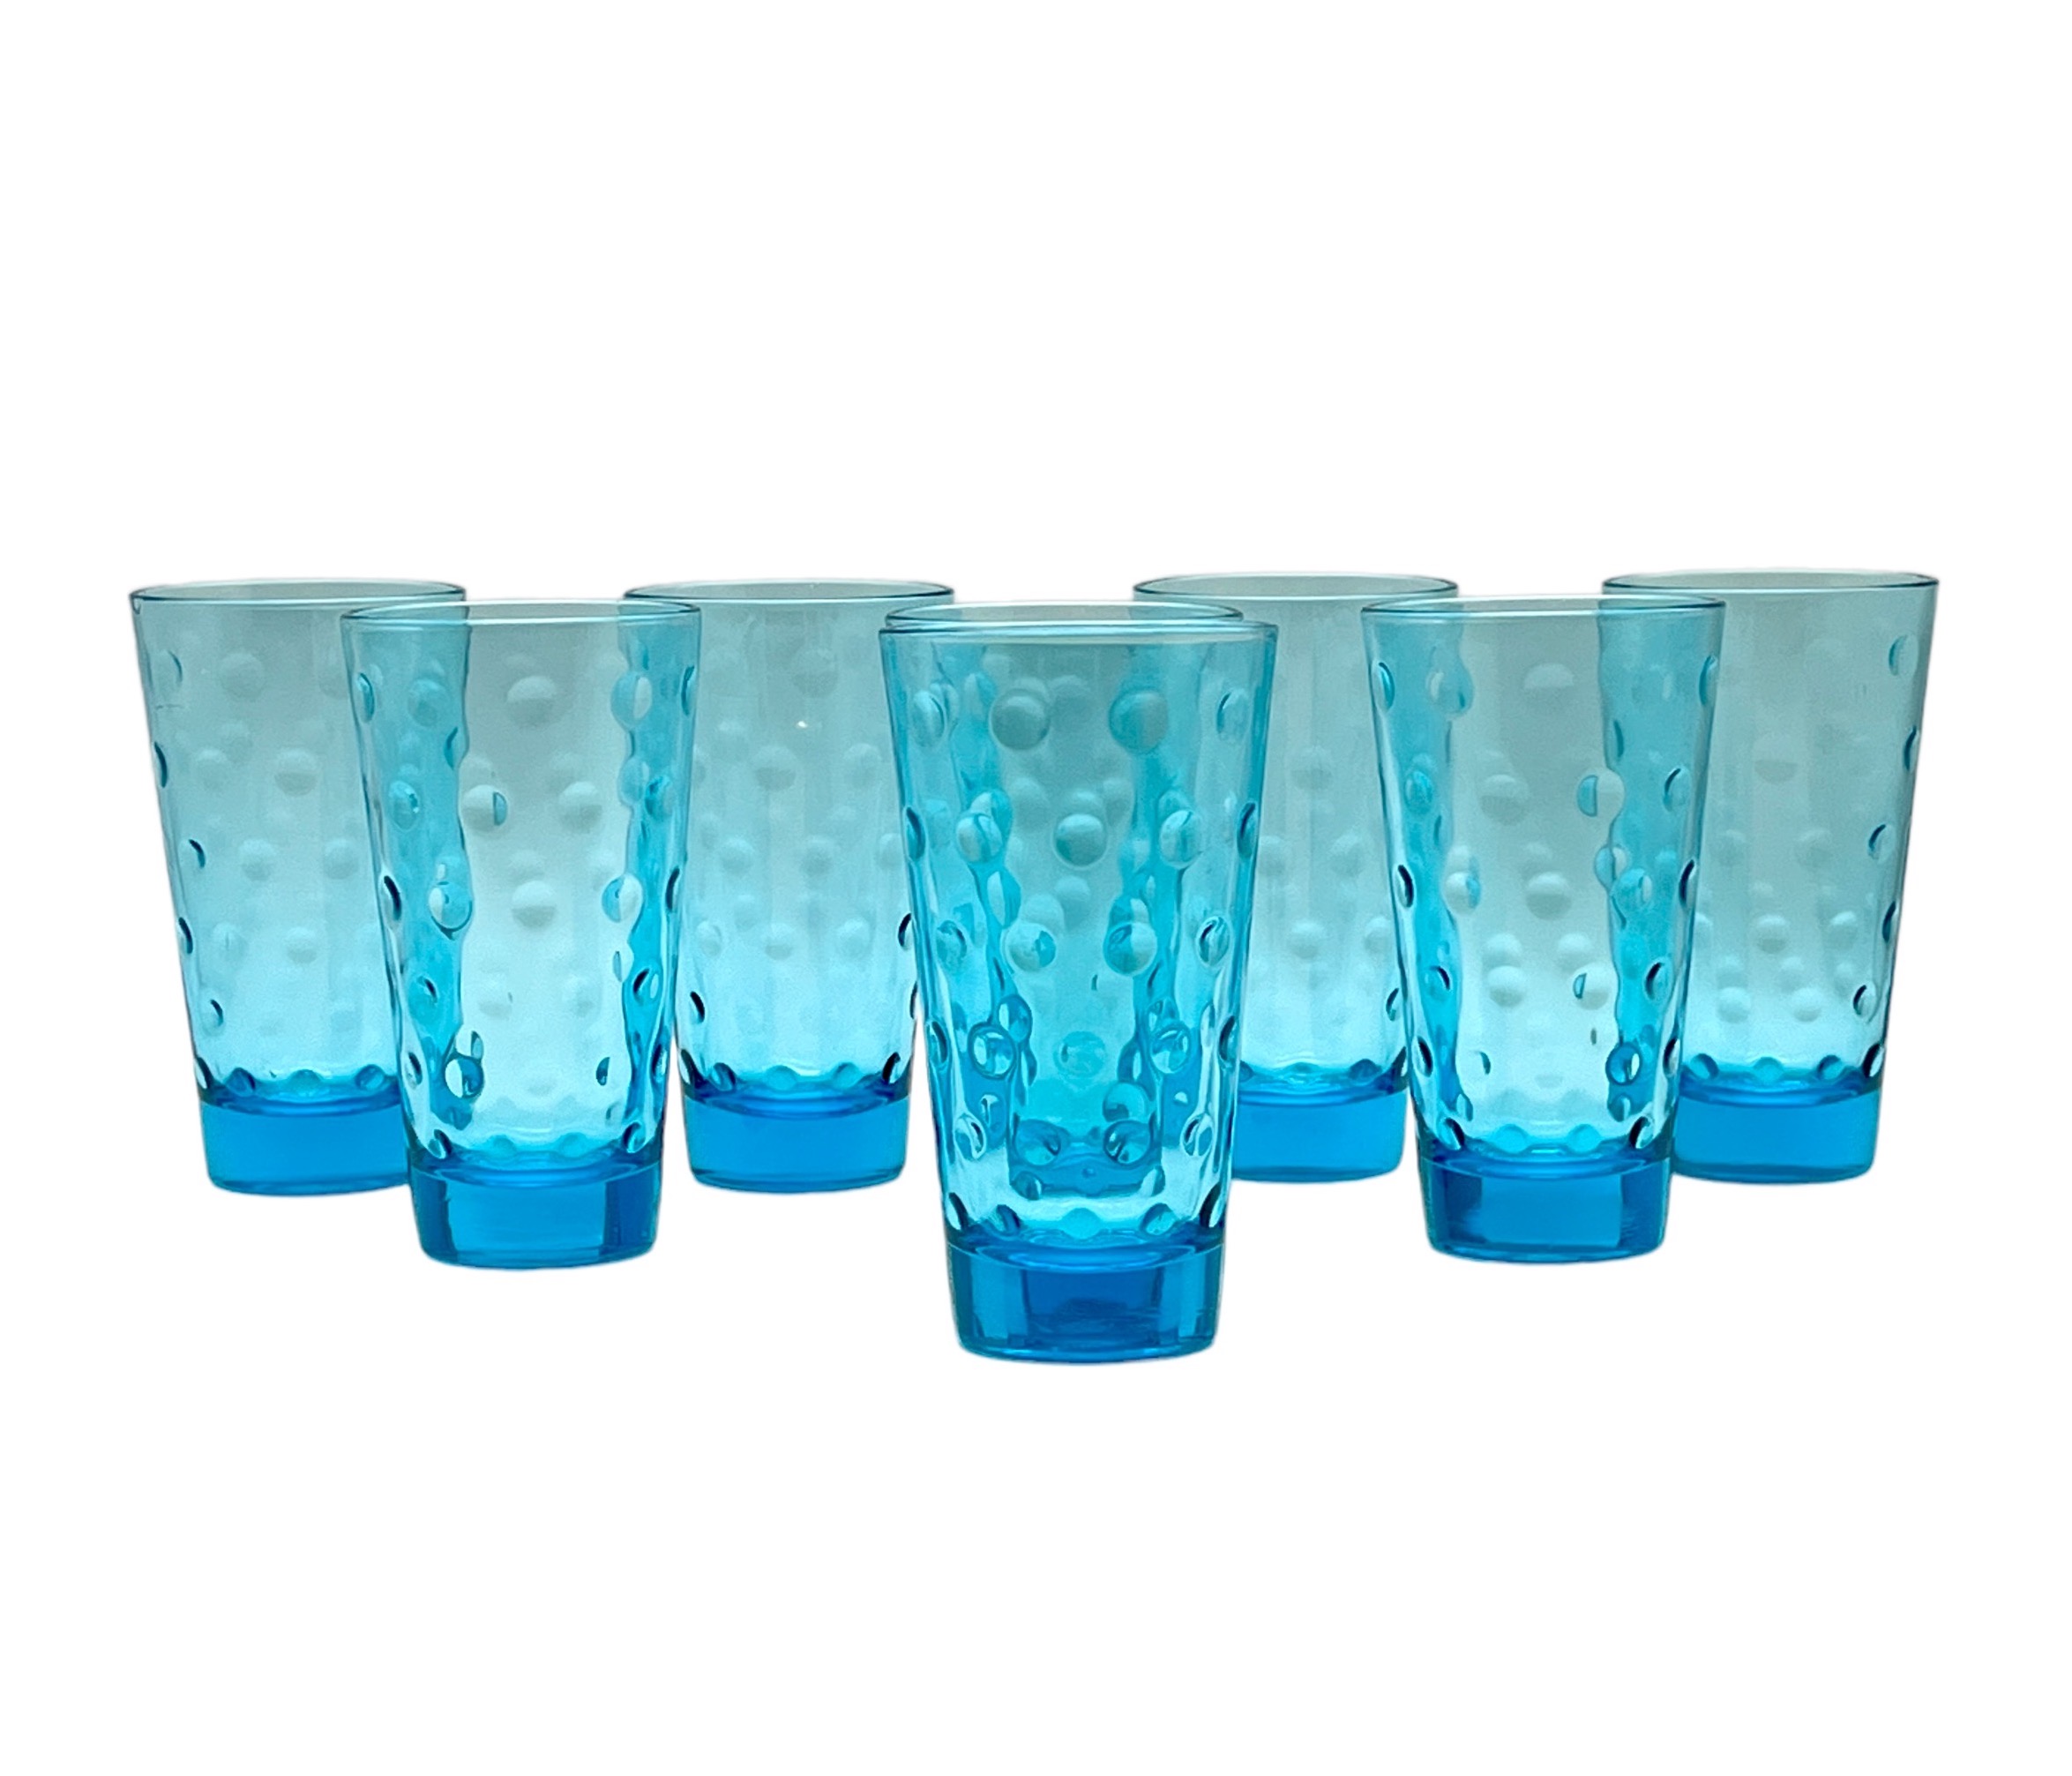 C. 1960s Light Blue Dots Tumbler Glasses~P77659659